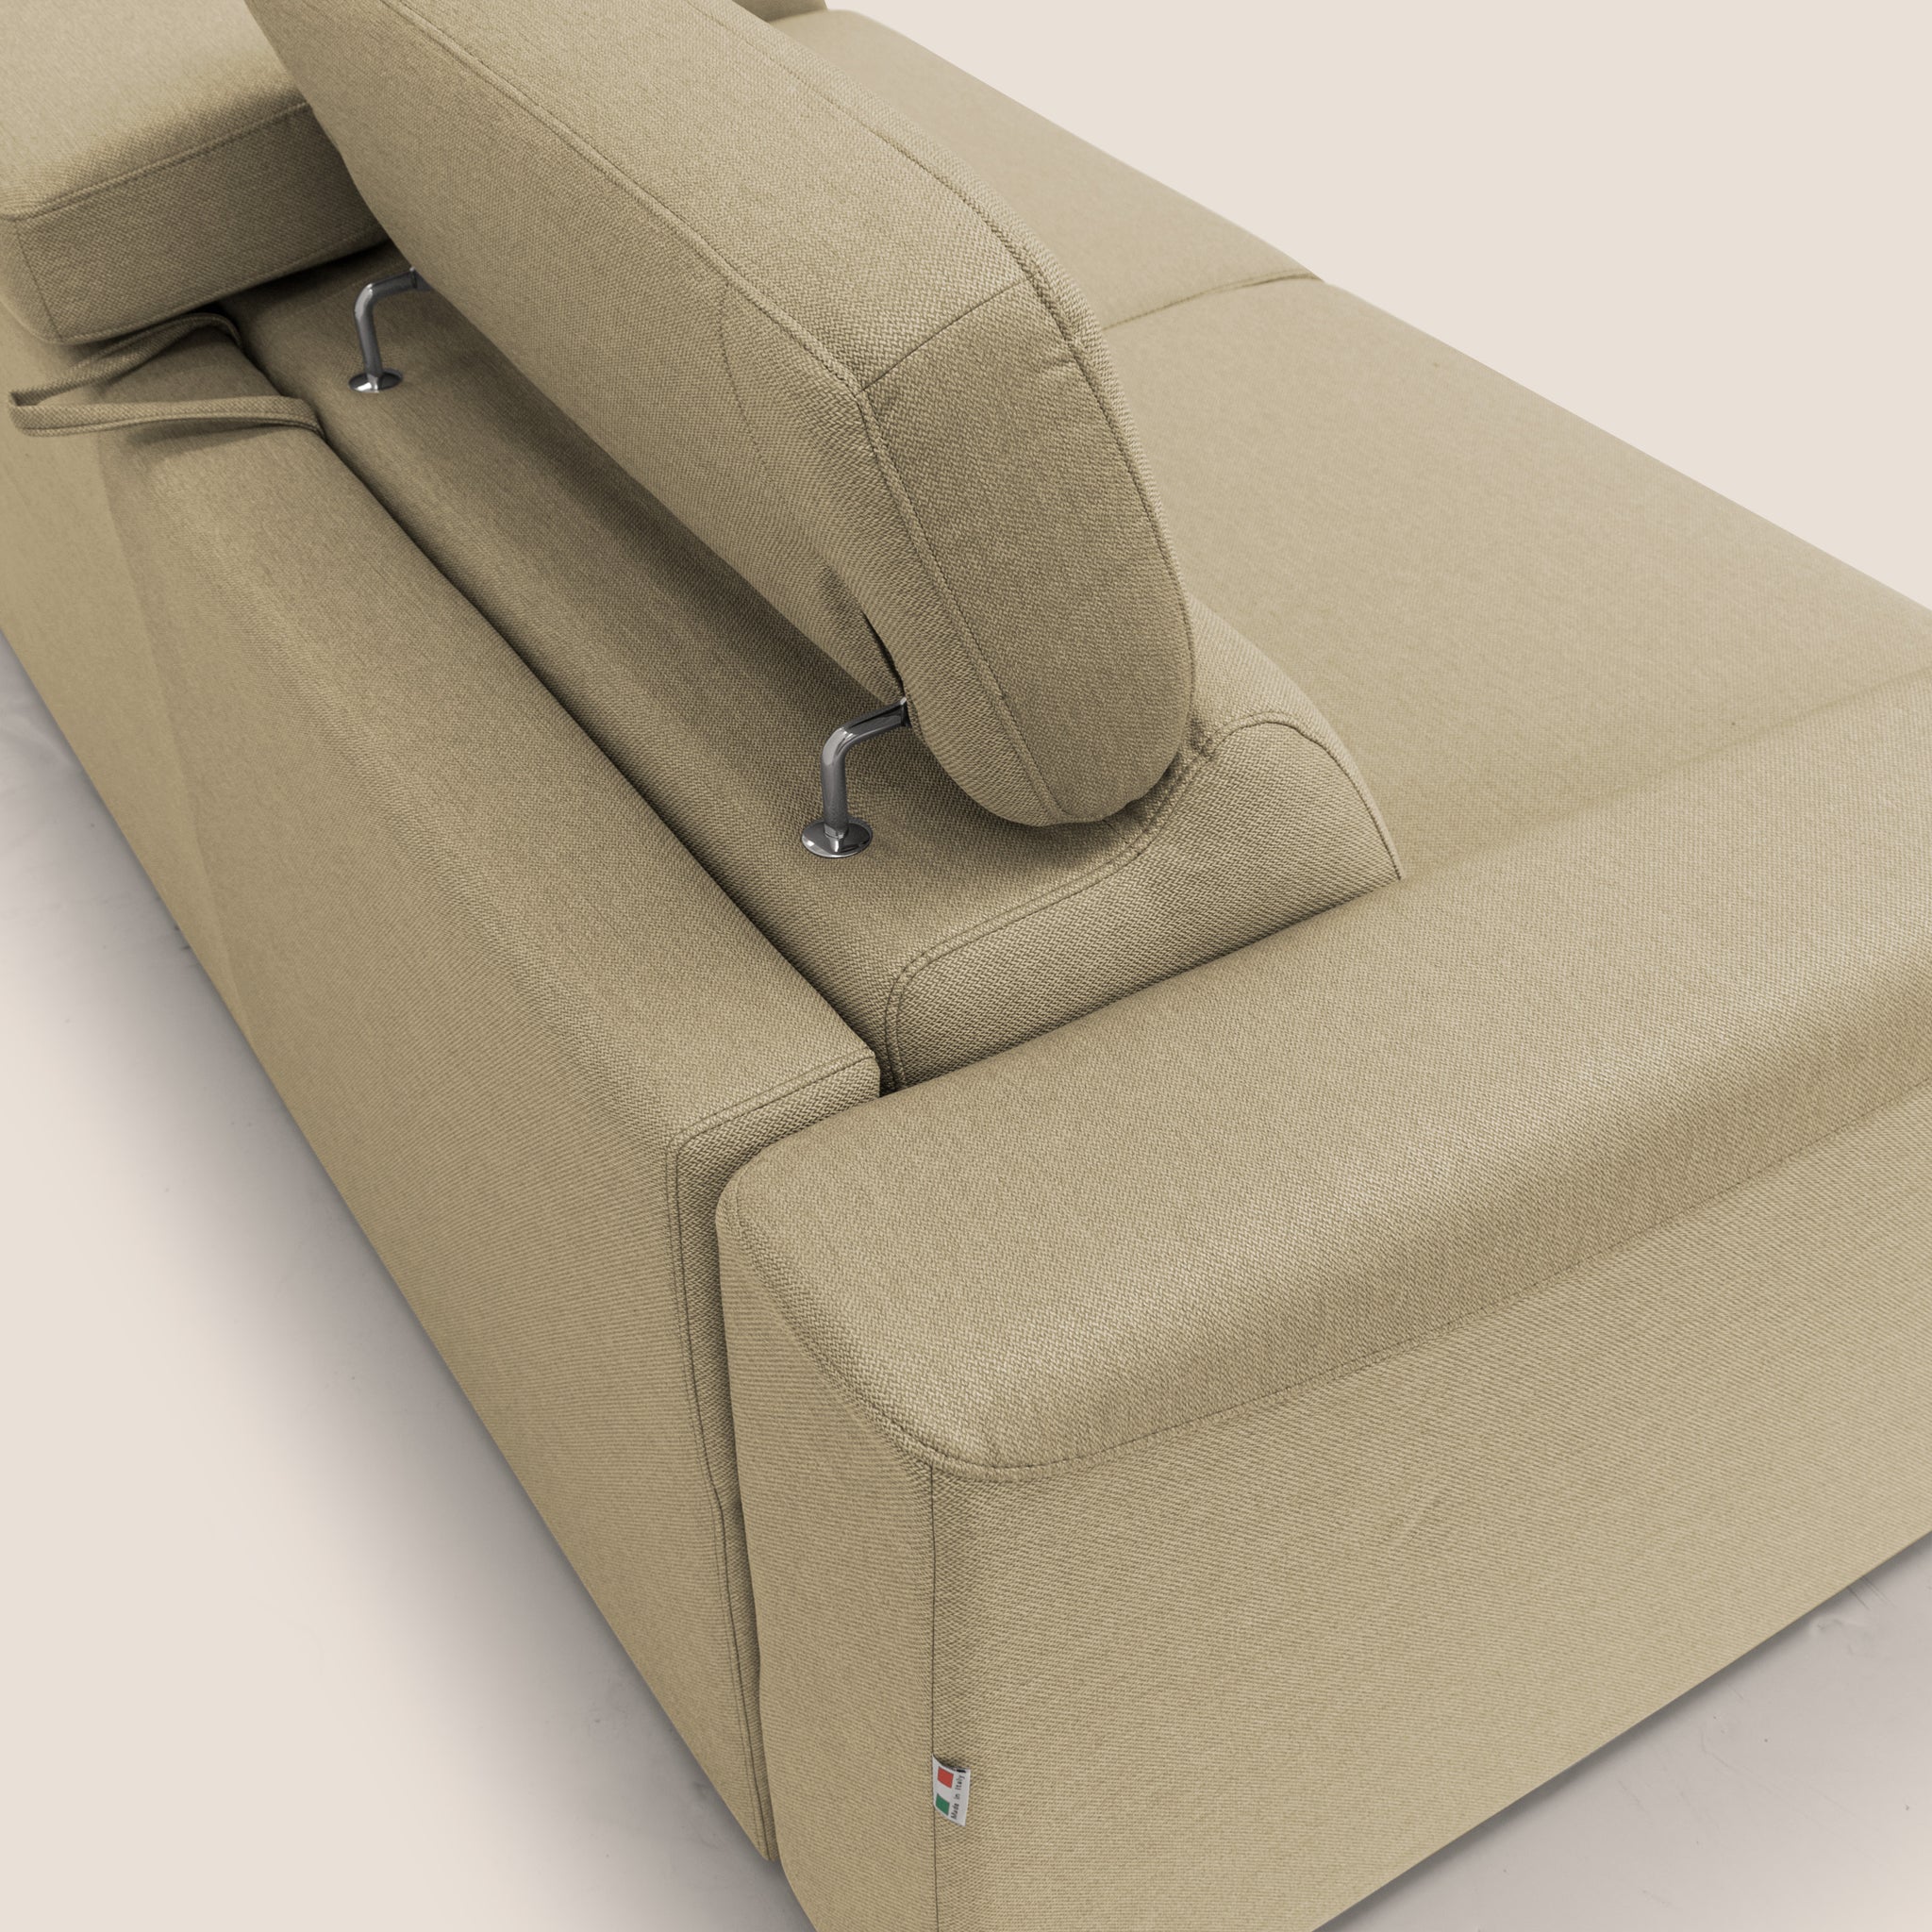 Poseidon divano letto + relax elettrico in tessuto smacchiabile impermeabile T05